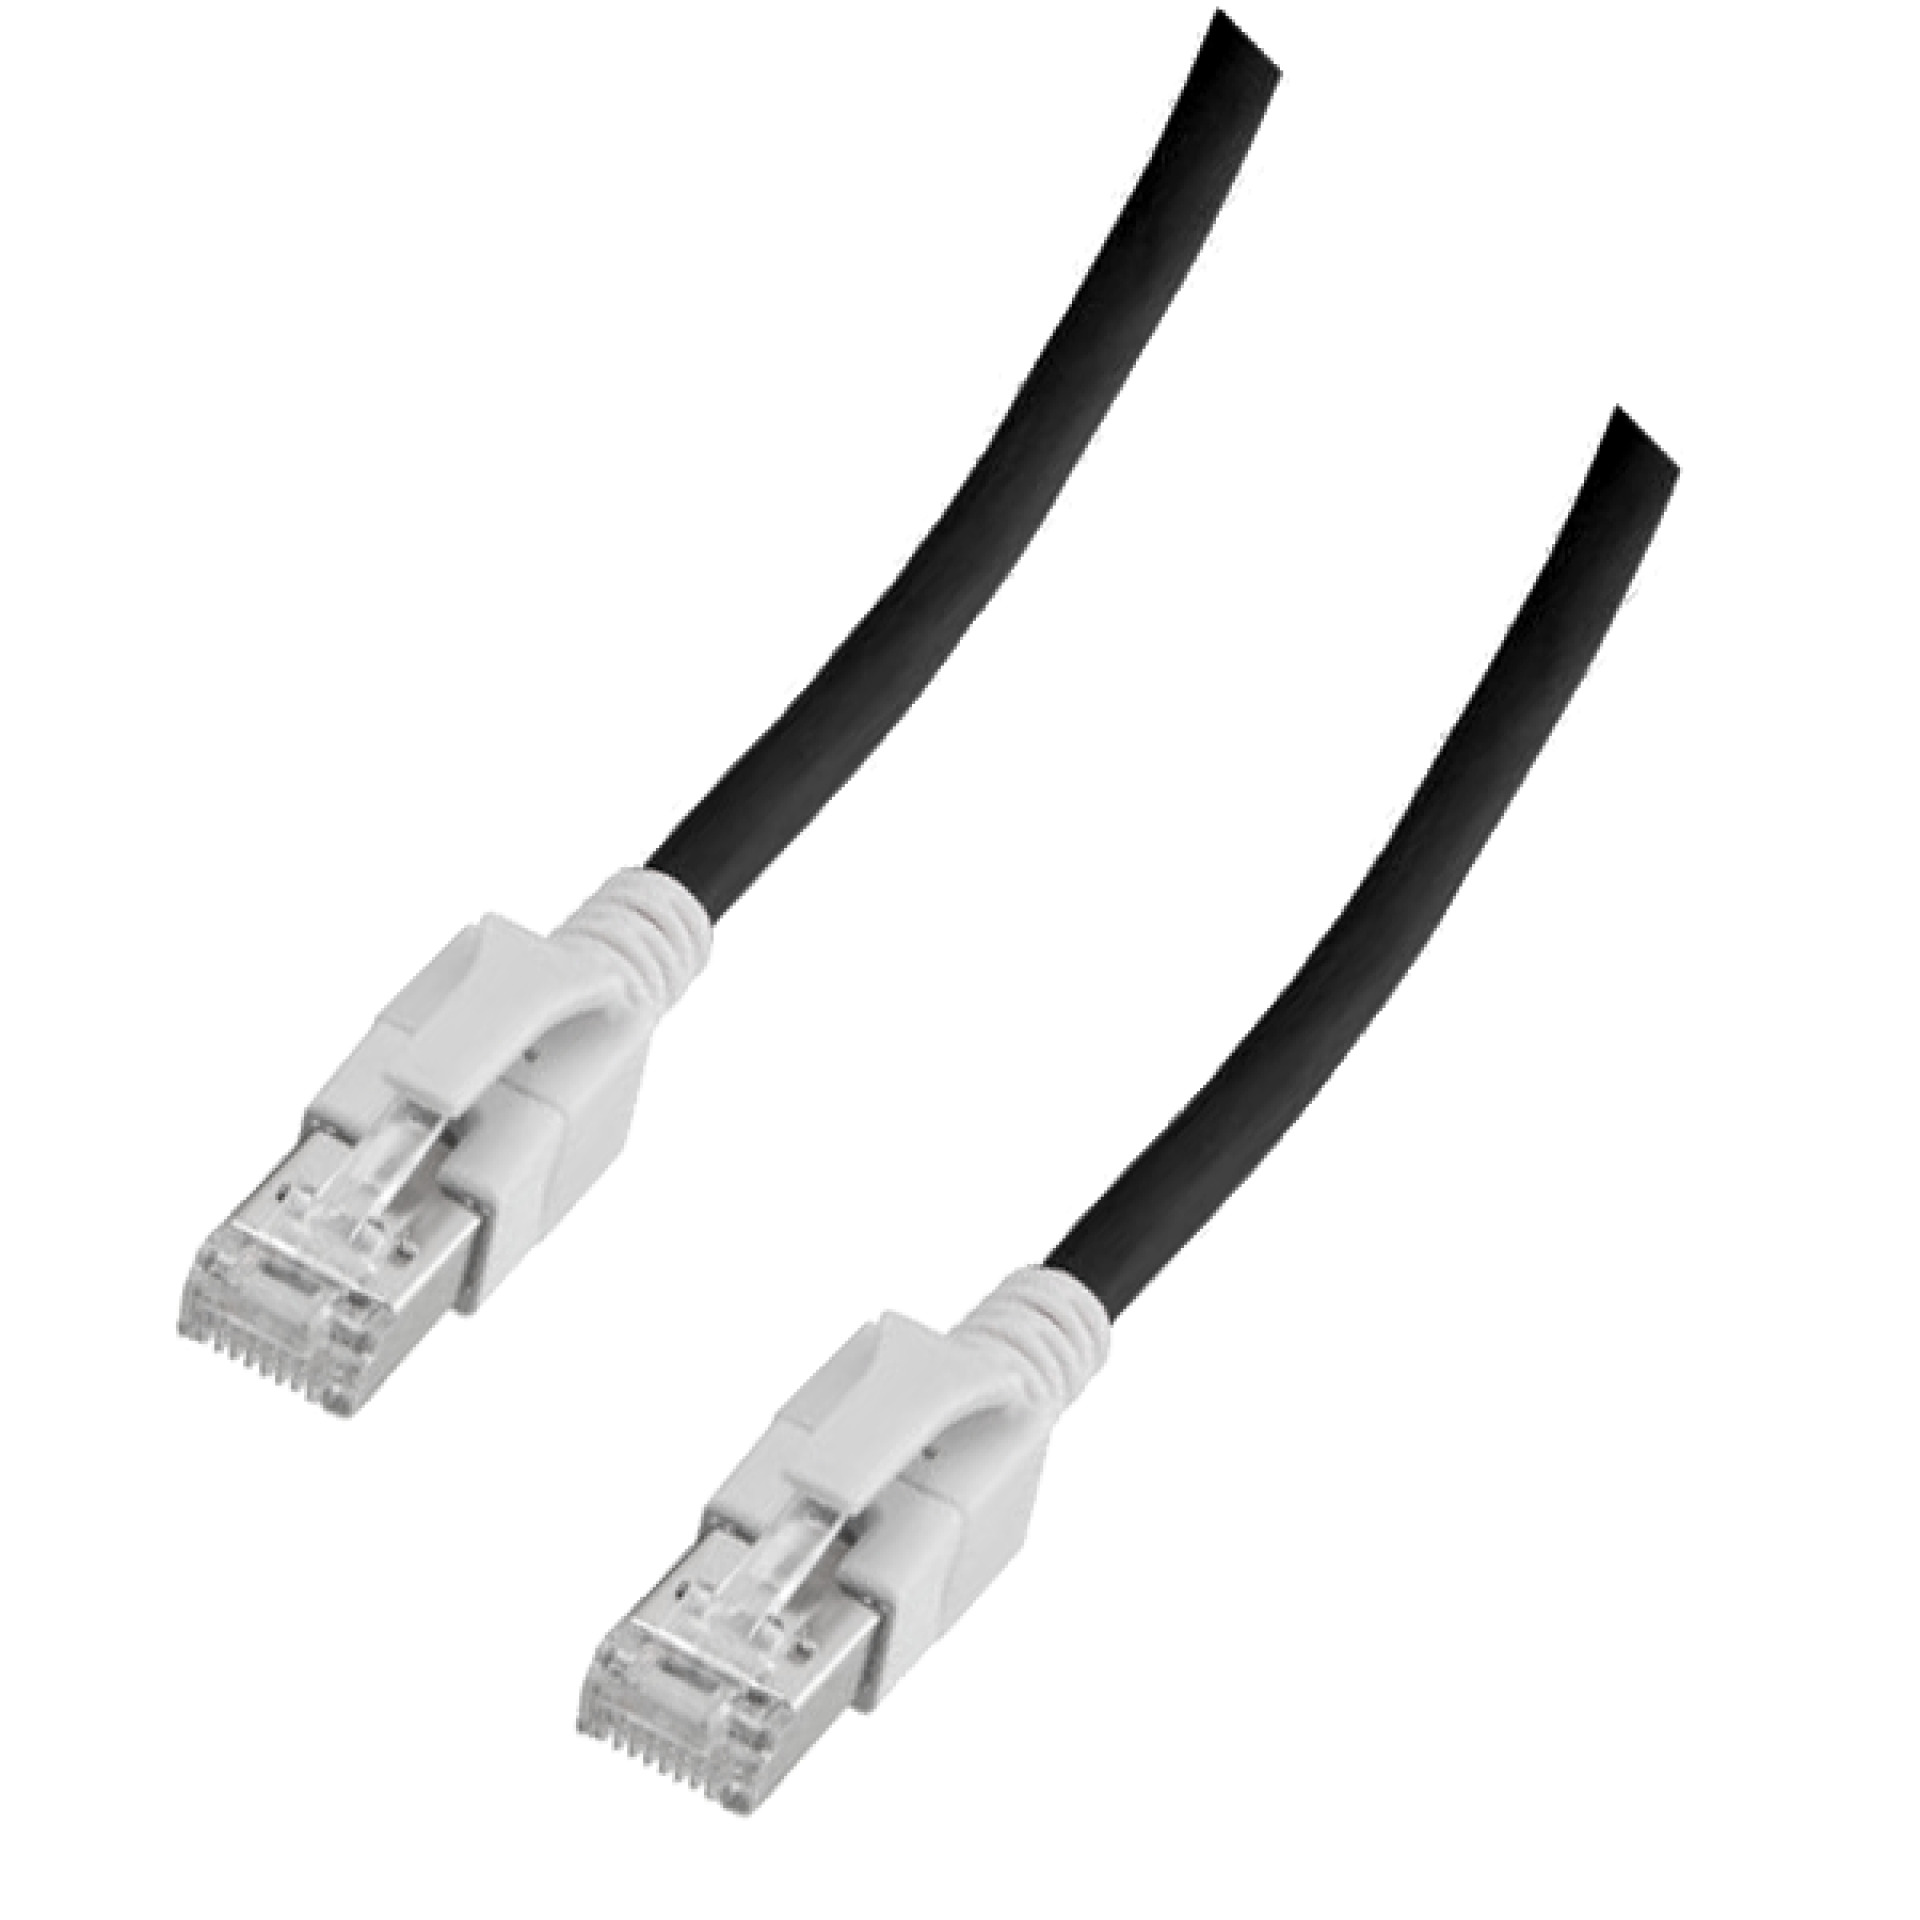 RJ45 Patch cable S/FTP, Cat.6A, VC LED, 1m, black